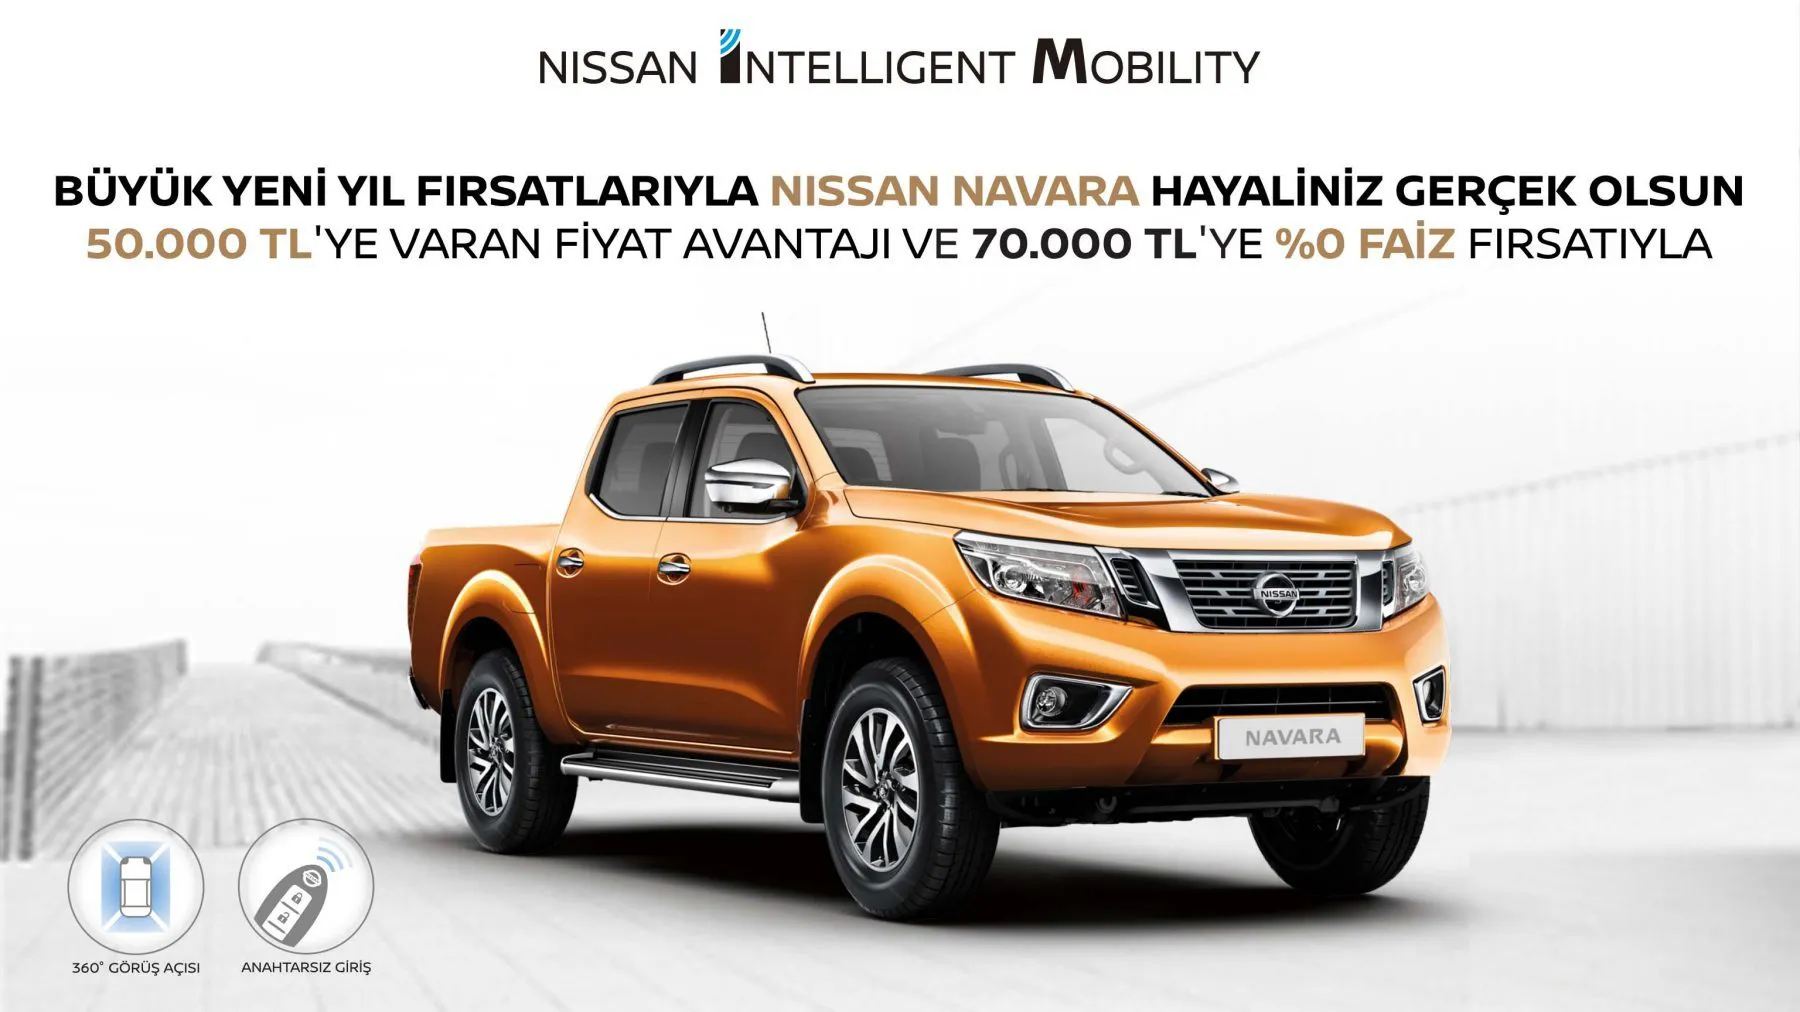 Büyük yeni yıl fırsatlarıyla Nissan Navara hayaliniz gerçek olsun!